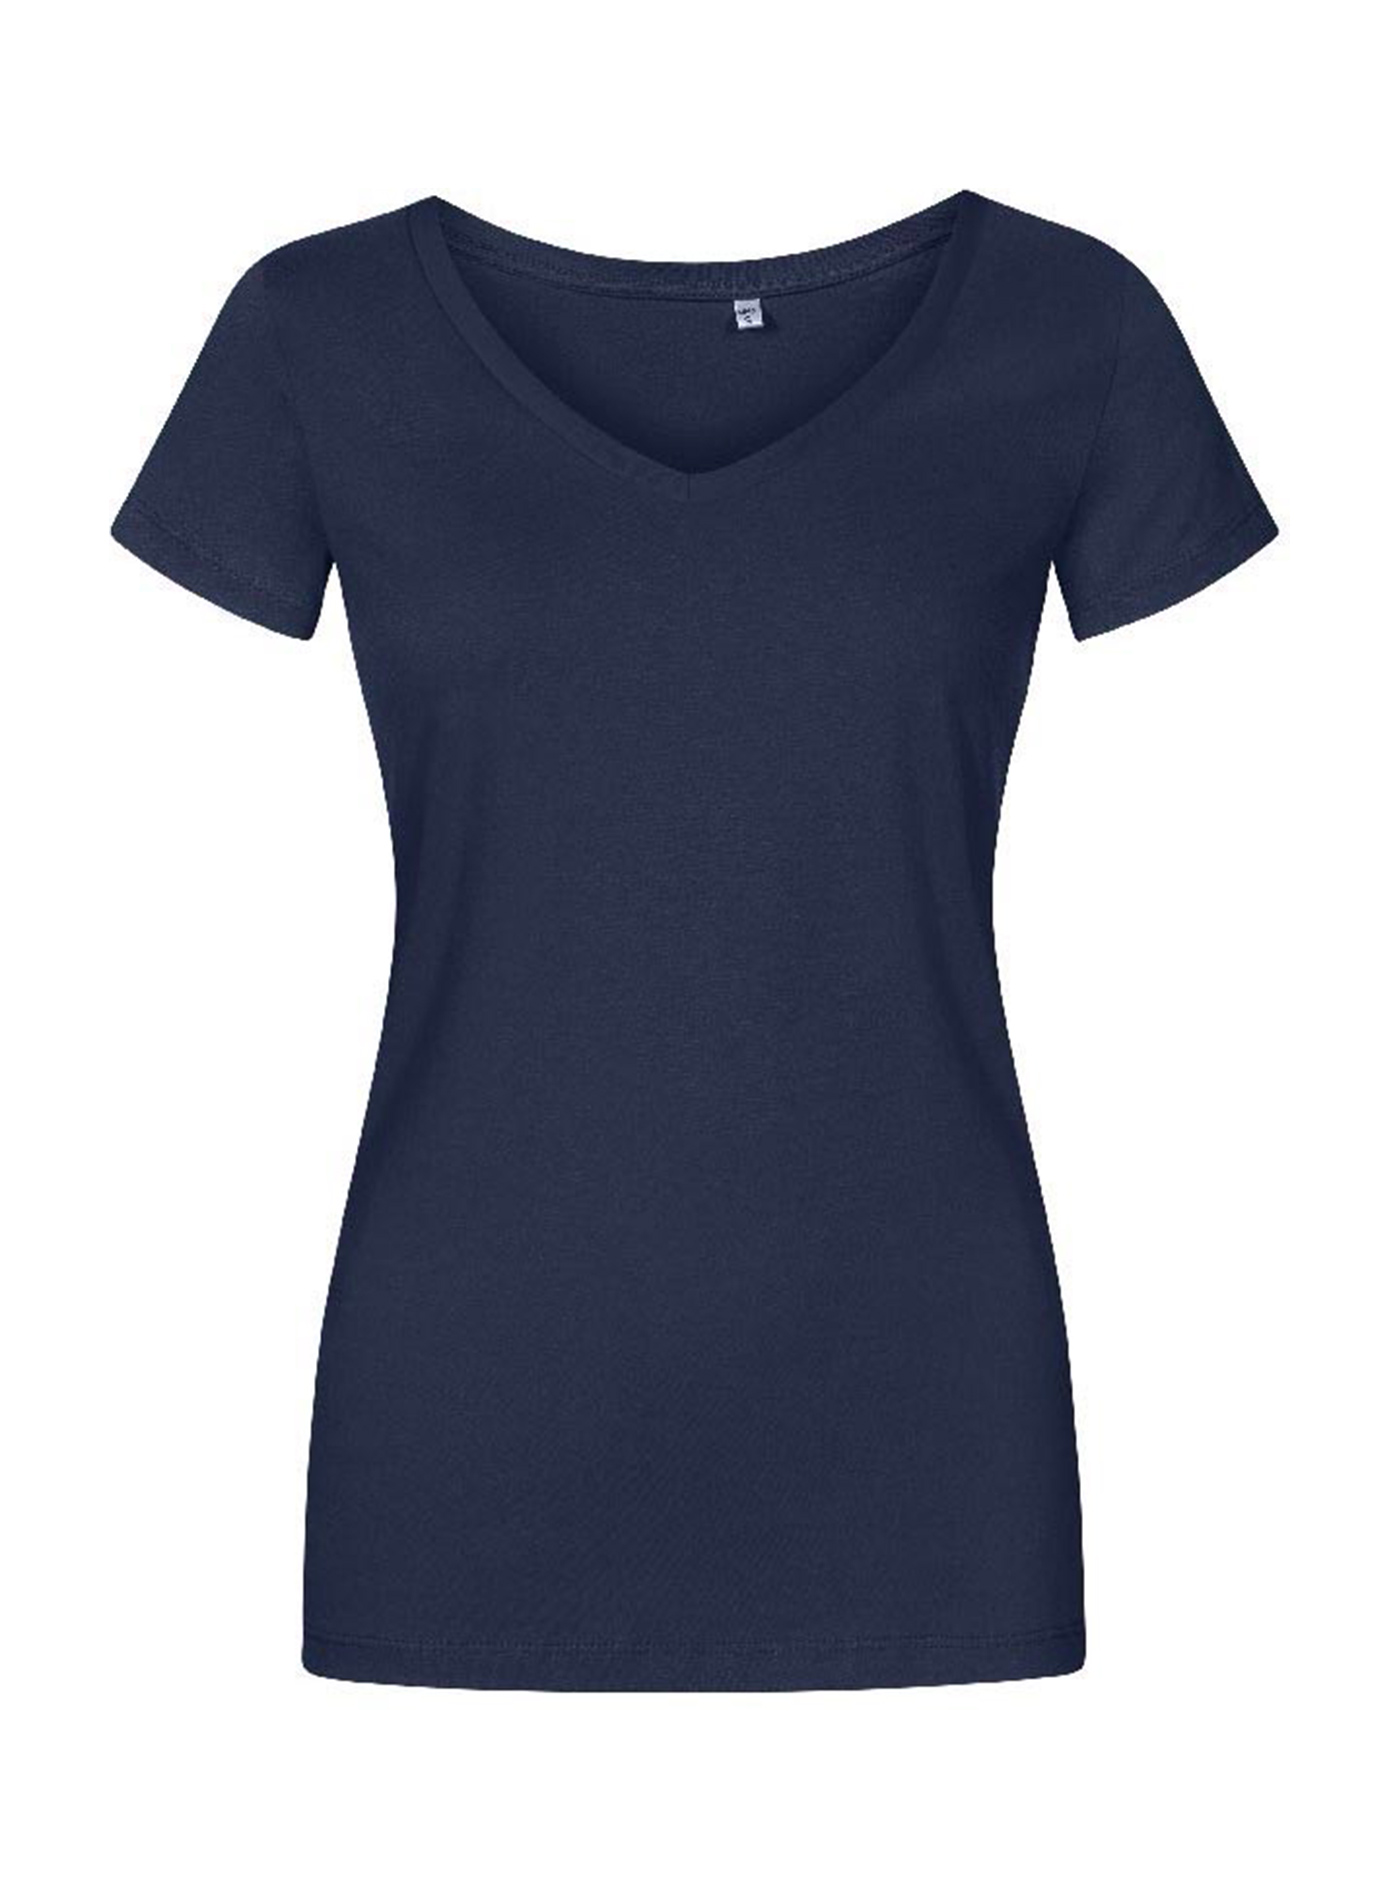 Dámské tričko Promodoro - Námořnická modrá M